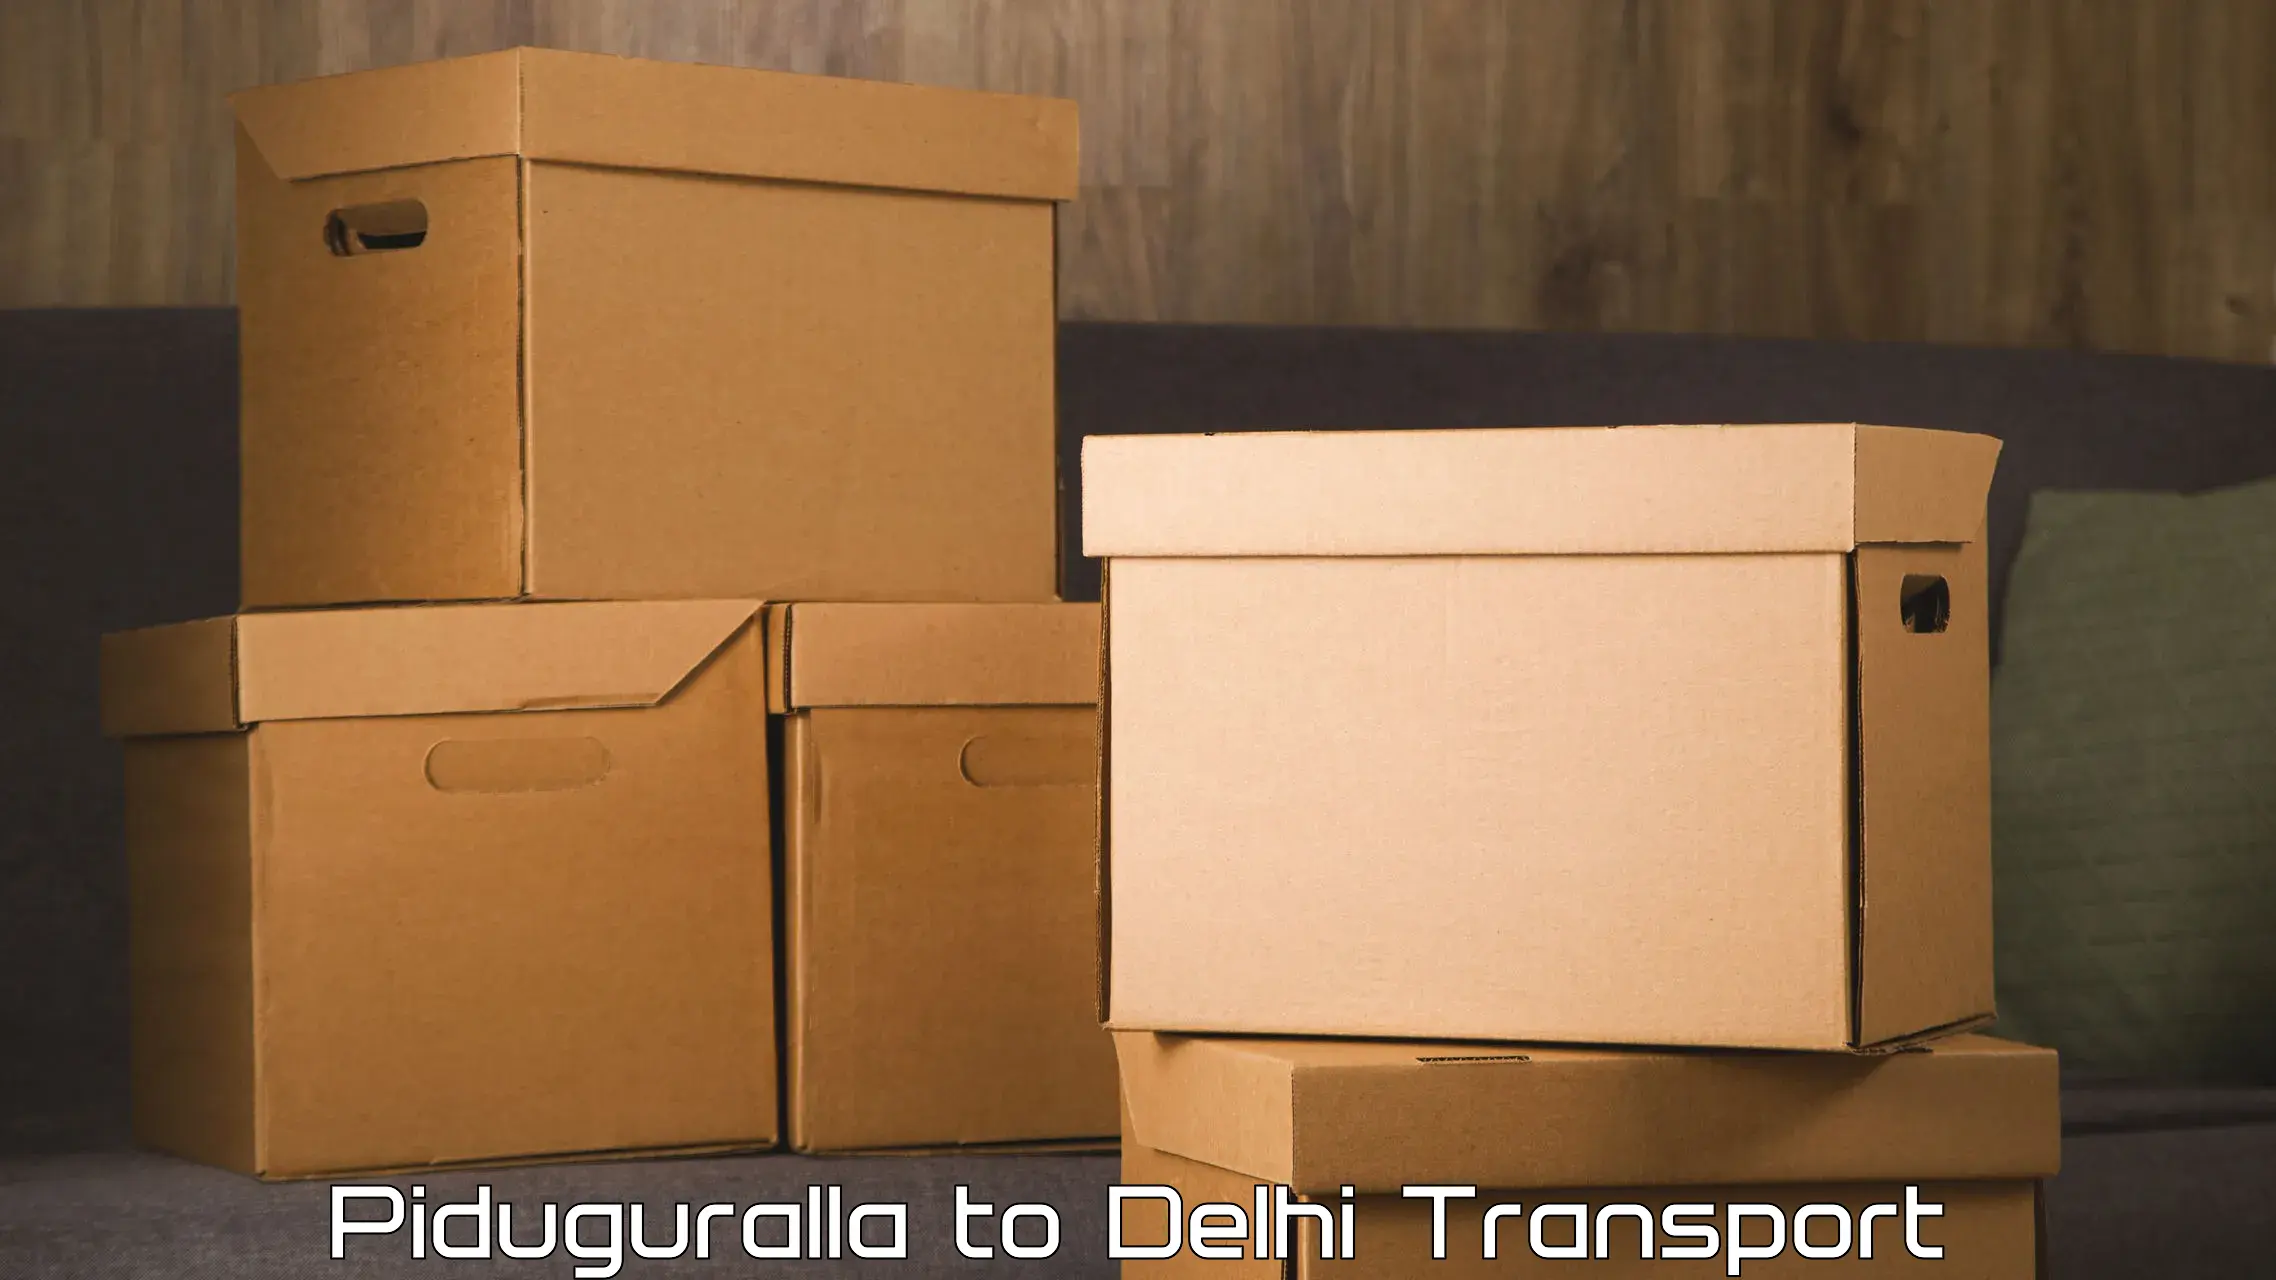 Pick up transport service Piduguralla to Sarojini Nagar